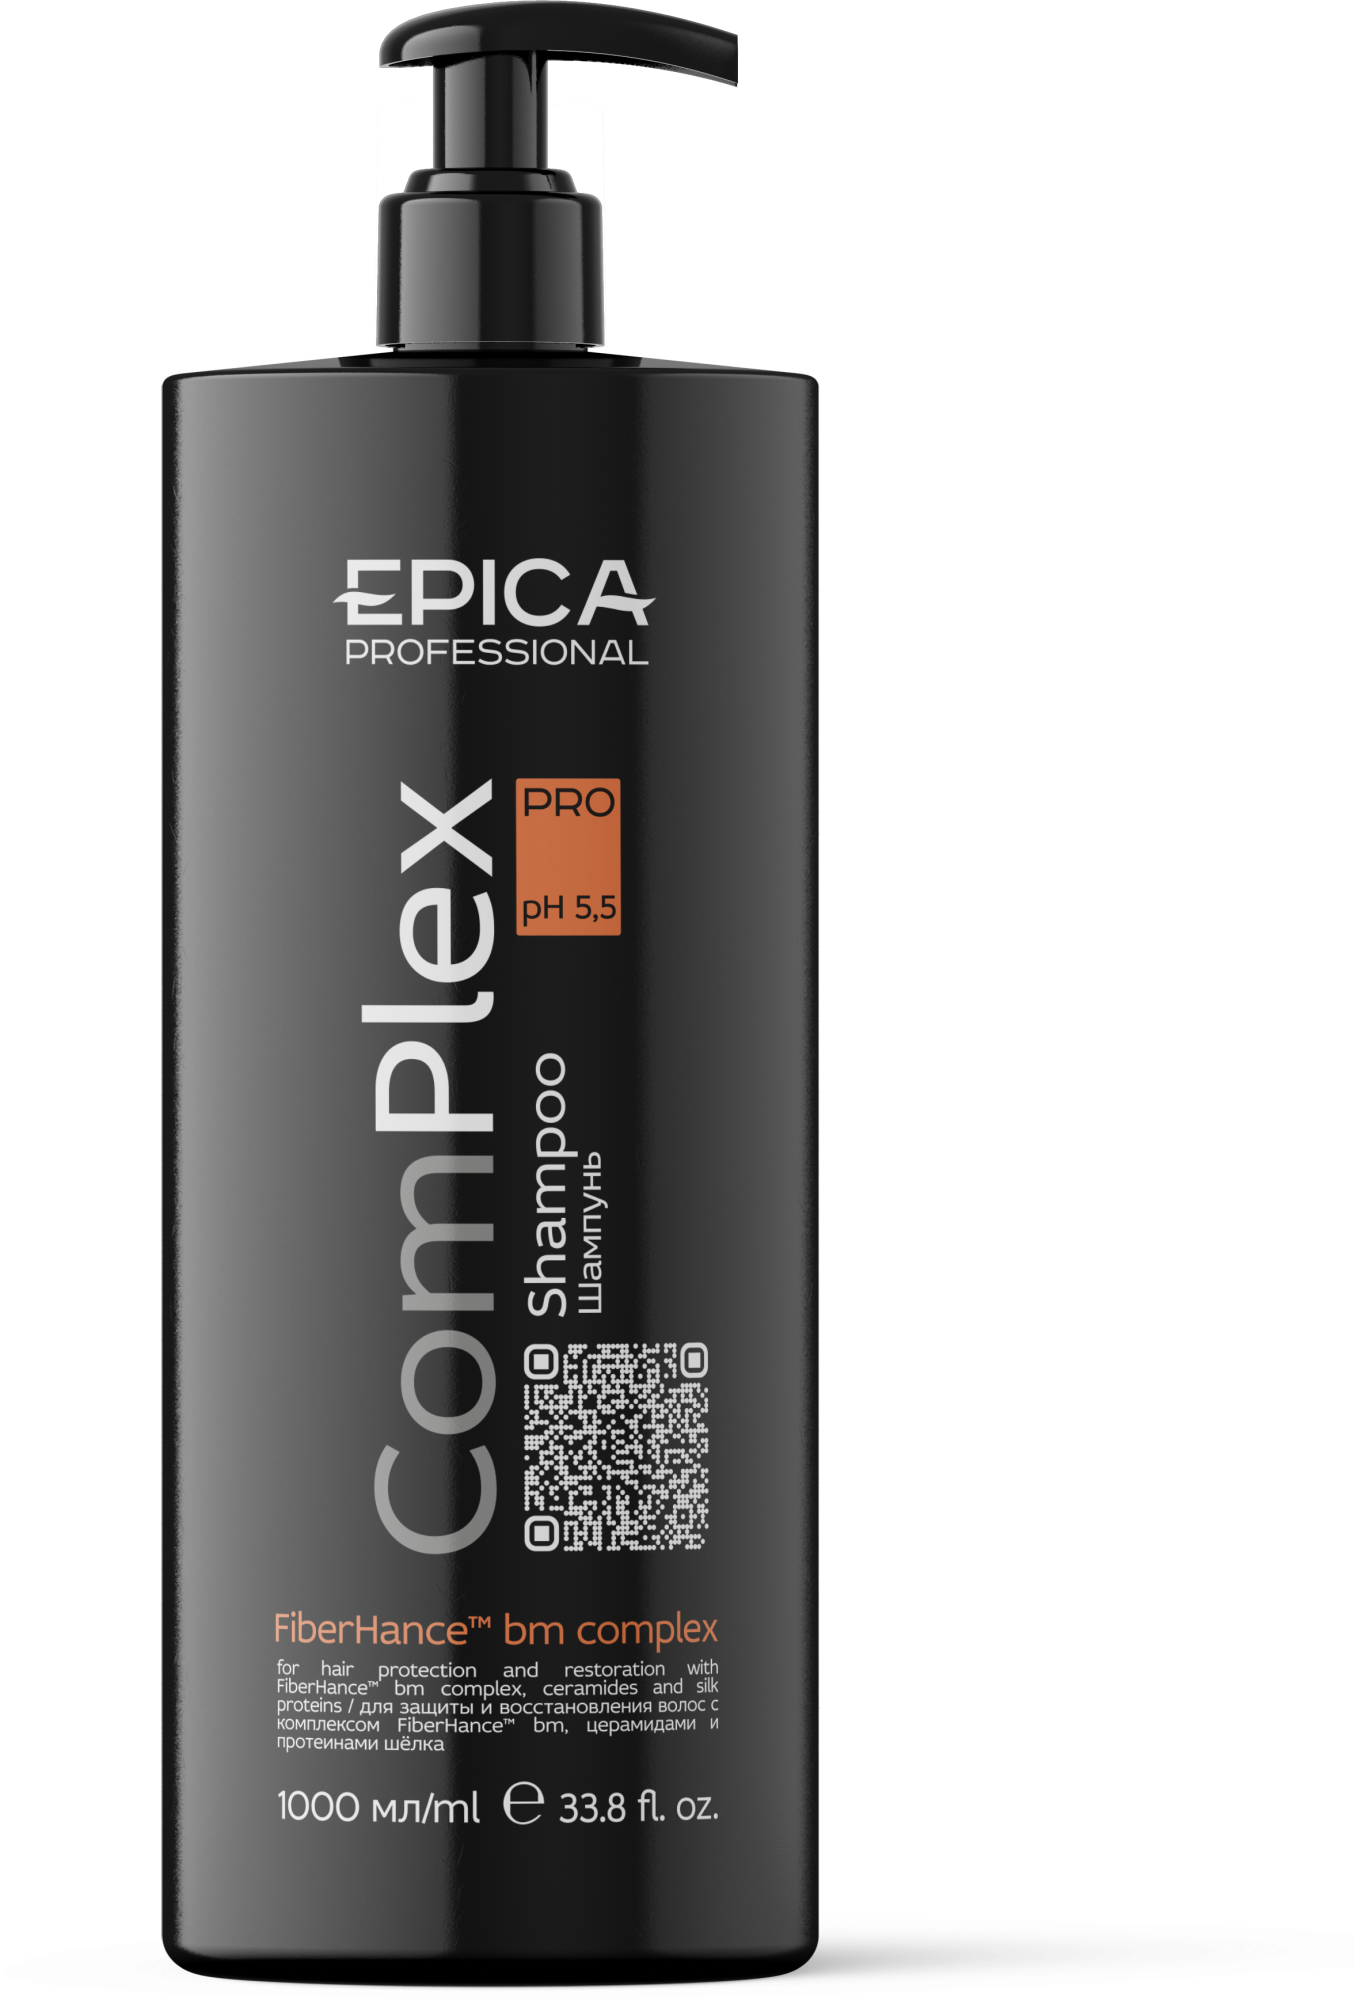 EPICA PROFESSIONAL ComPlex Pro Шампунь для защиты и восстановления волос, 1000 мл